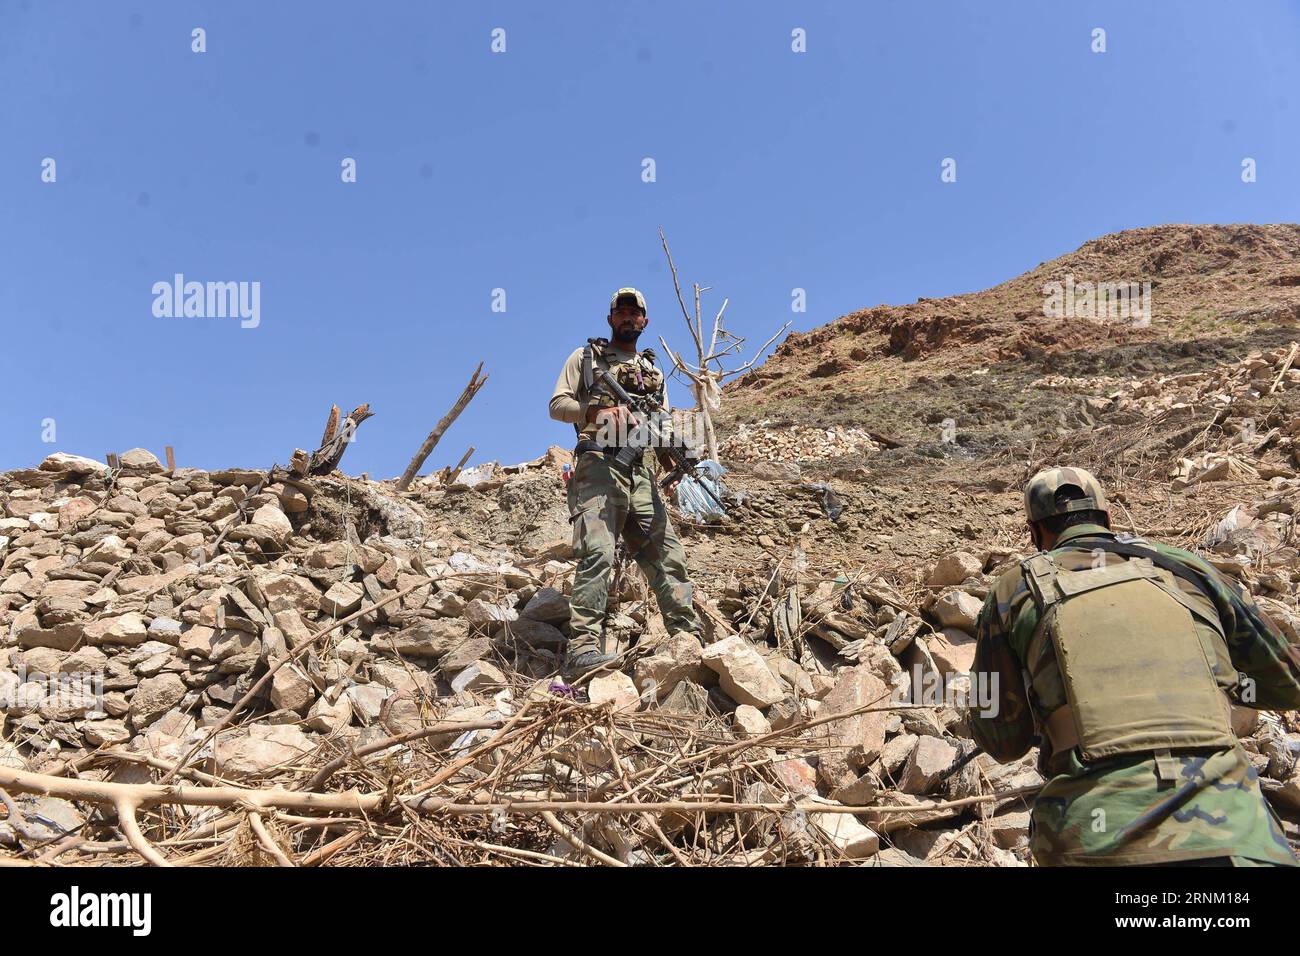 (170430) -- NANGARHAR, 30. April 2017 -- afghanische Soldaten inspizieren am 28. April 2017 an der Stelle eines US-Bombenanschlags im Bezirk Achin der Provinz Nangarhar in Afghanistan. Am 13. April schlugen die US-Streitkräfte in Afghanistan einen IS-Höhlenkomplex durch die größte nicht-nukleare Bombe im bergigen Achin-Bezirk der Provinz, 120 km östlich von Kabul, wobei fast 100 IS-Kämpfer getötet und ein Versteck der Militanten zusammen mit mehreren Bunkern und Tunneln zerstört wurden. )(RH) AFGHANISTAN-NANGARHAR-USA BOMBENNACHWIRKUNGEN RahmanxSafi PUBLICATIONxNOTxINxCHN Nangarhar April 30 2017 afghanische Soldaten inspizieren IN Th Stockfoto